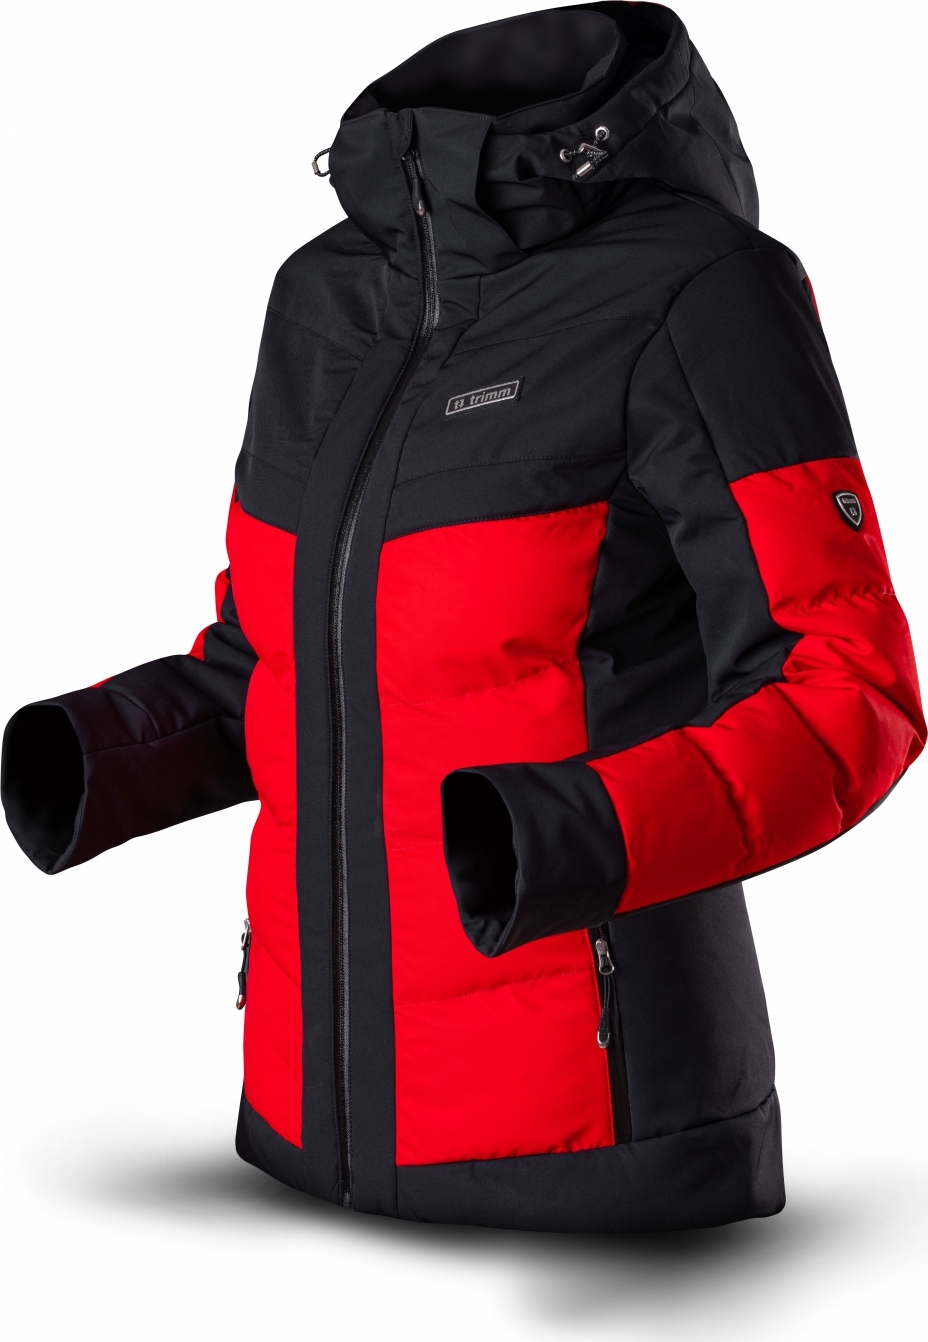 Dámská lyžařská bunda TRIMM Vario Lady červená/černá Velikost: XS, Barva: red/ black